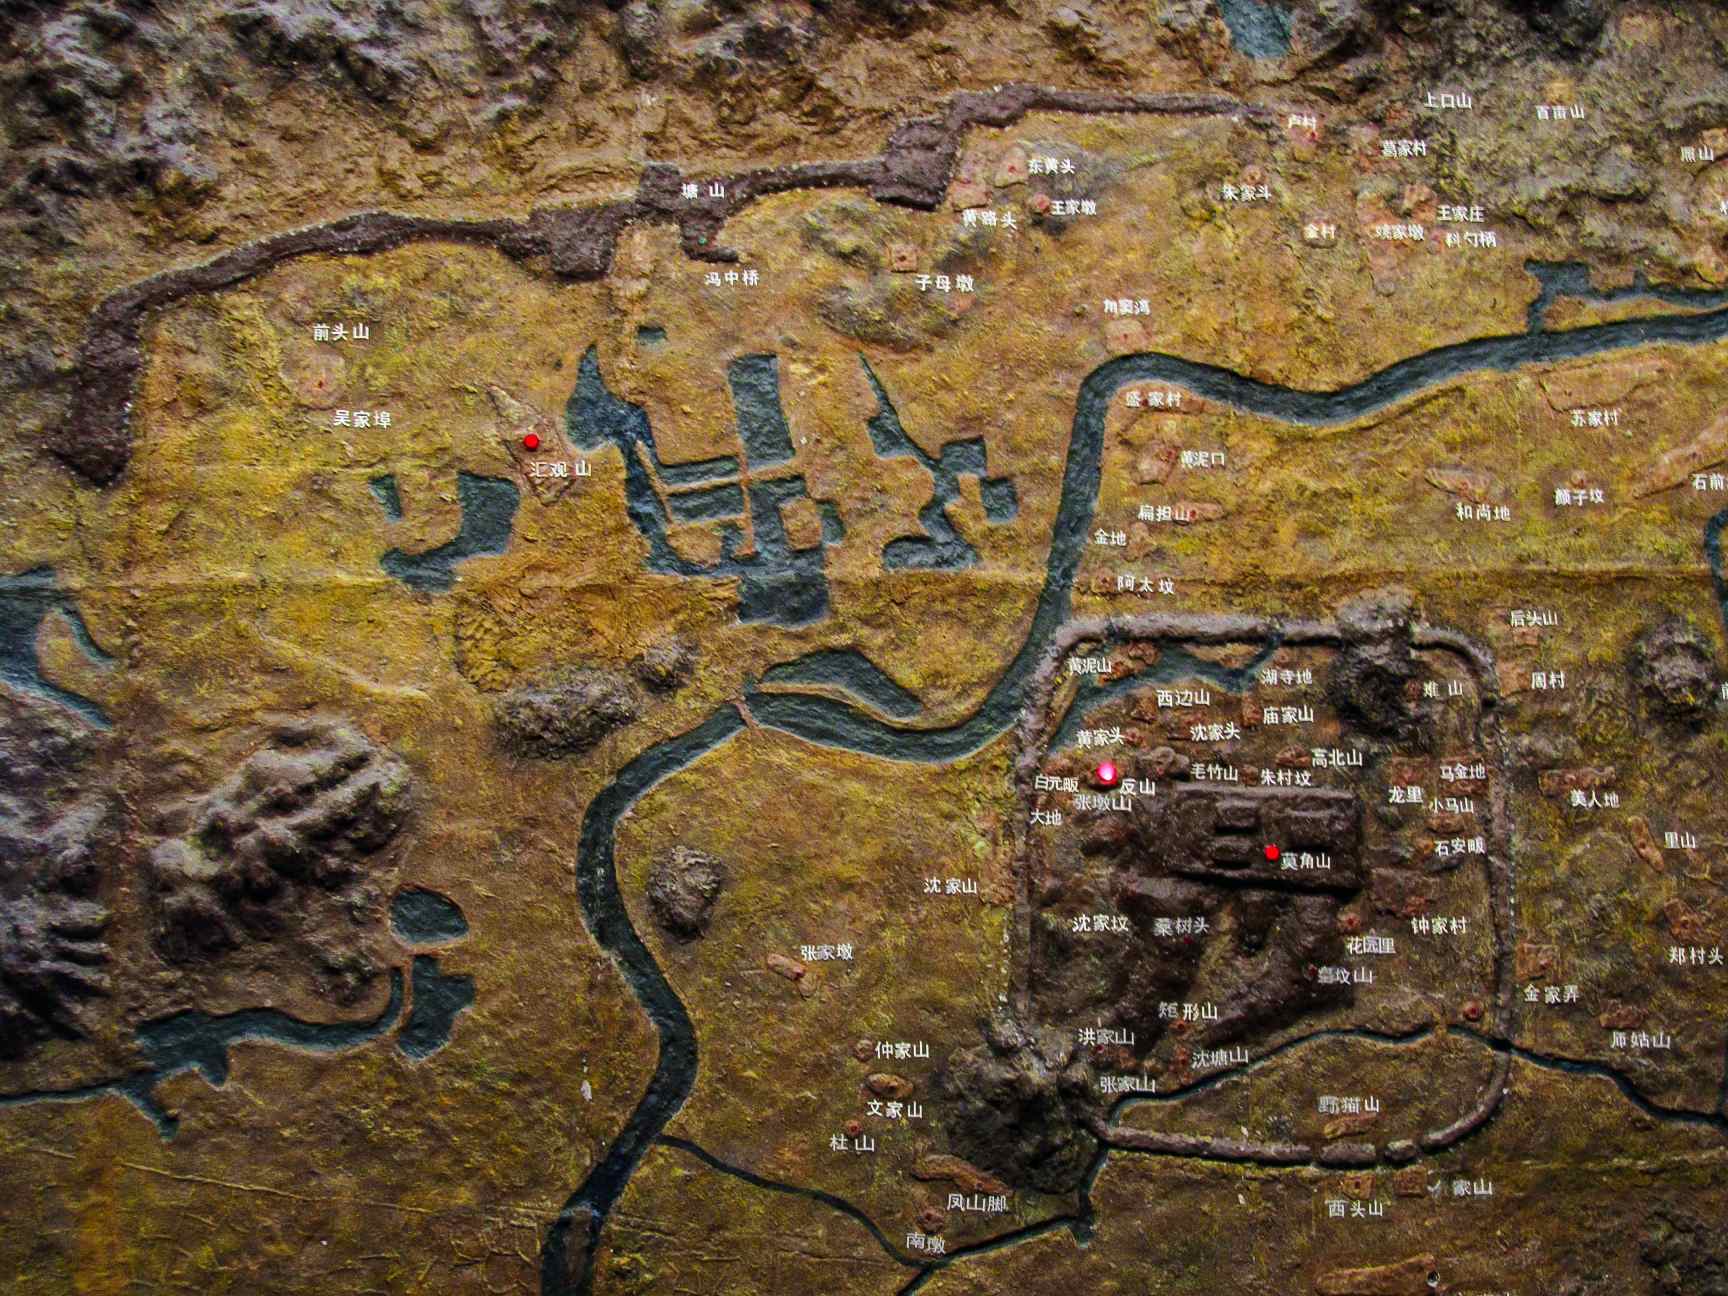 Model van de oude stad Liangzhu, tentoongesteld in het Liangzhu Museum.